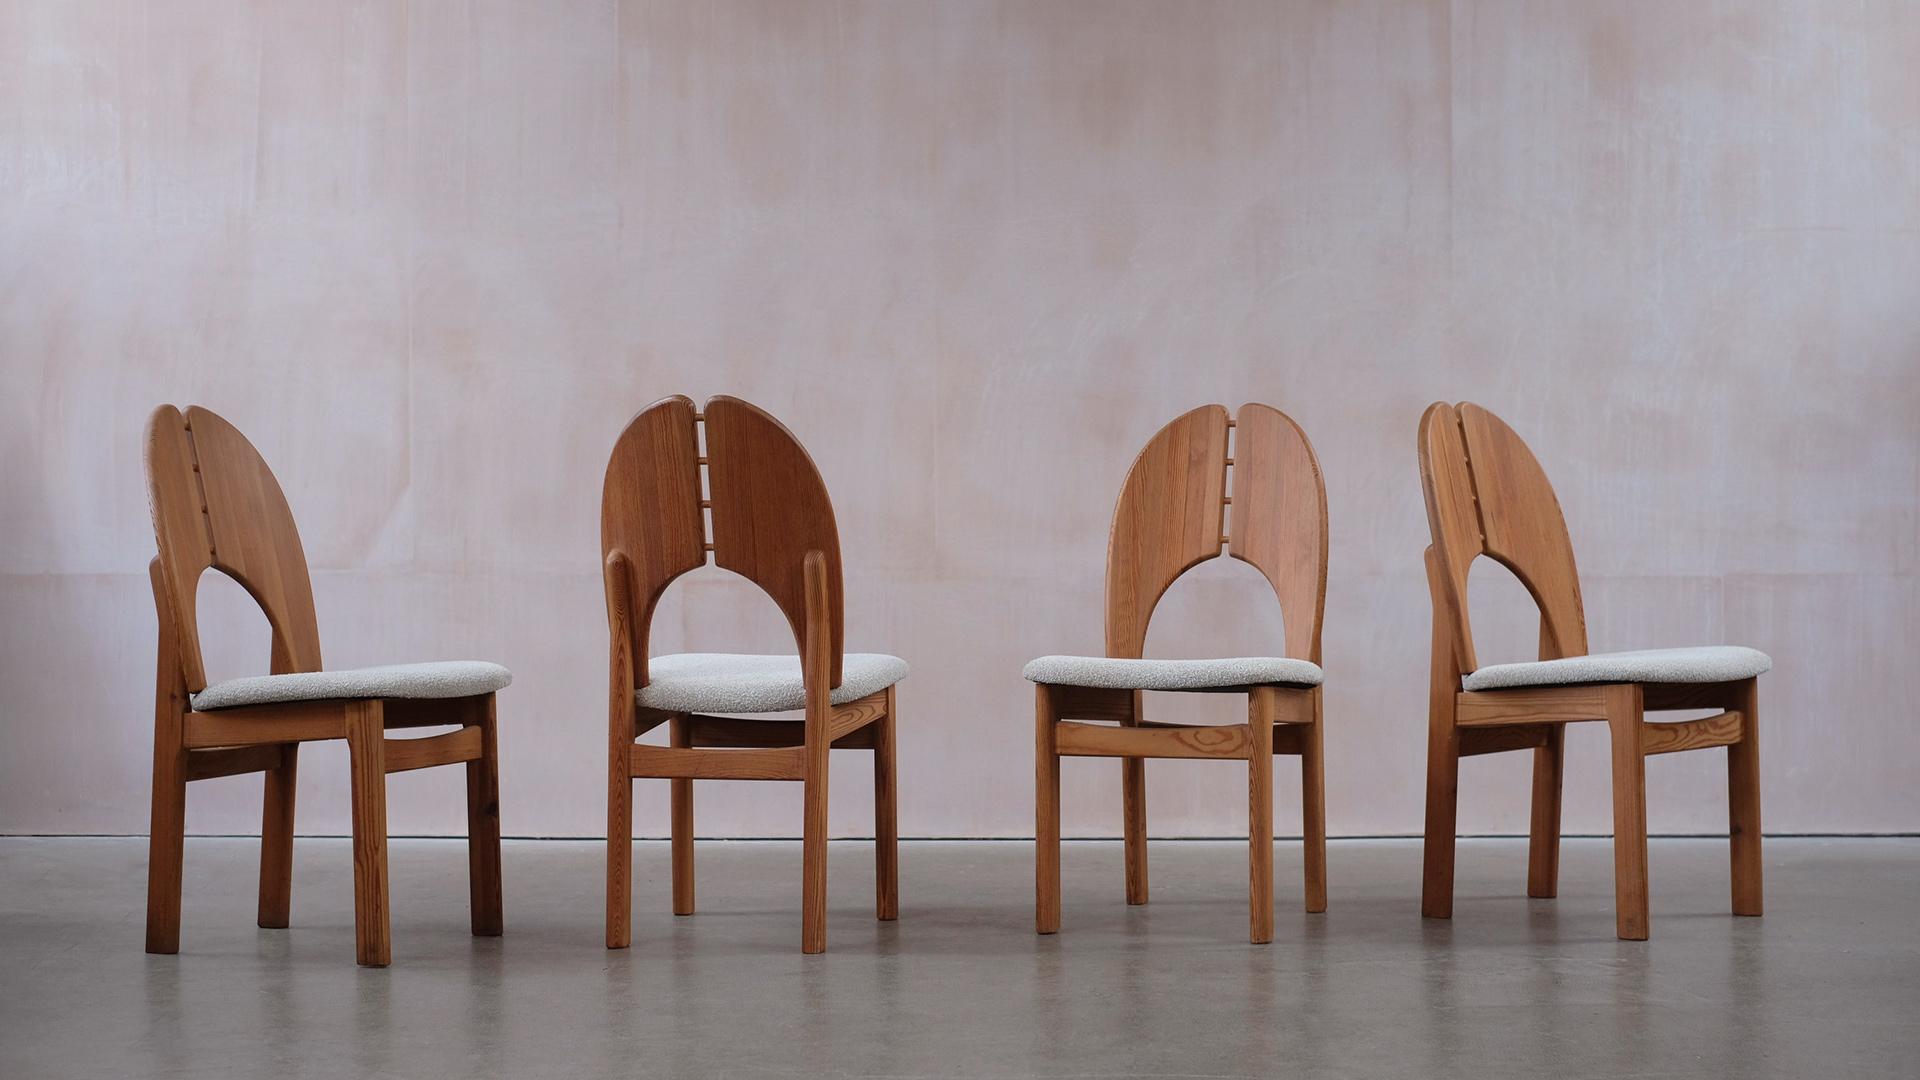 Merveilleux ensemble de chaises suédoises en pitch pine avec un motif de grain saisissant et une patine étonnante. Reupholstered in a boucle by Kirkby design. Très sculptural et de grande qualité. Les chaises ne sont pas attribuées à un designer ou